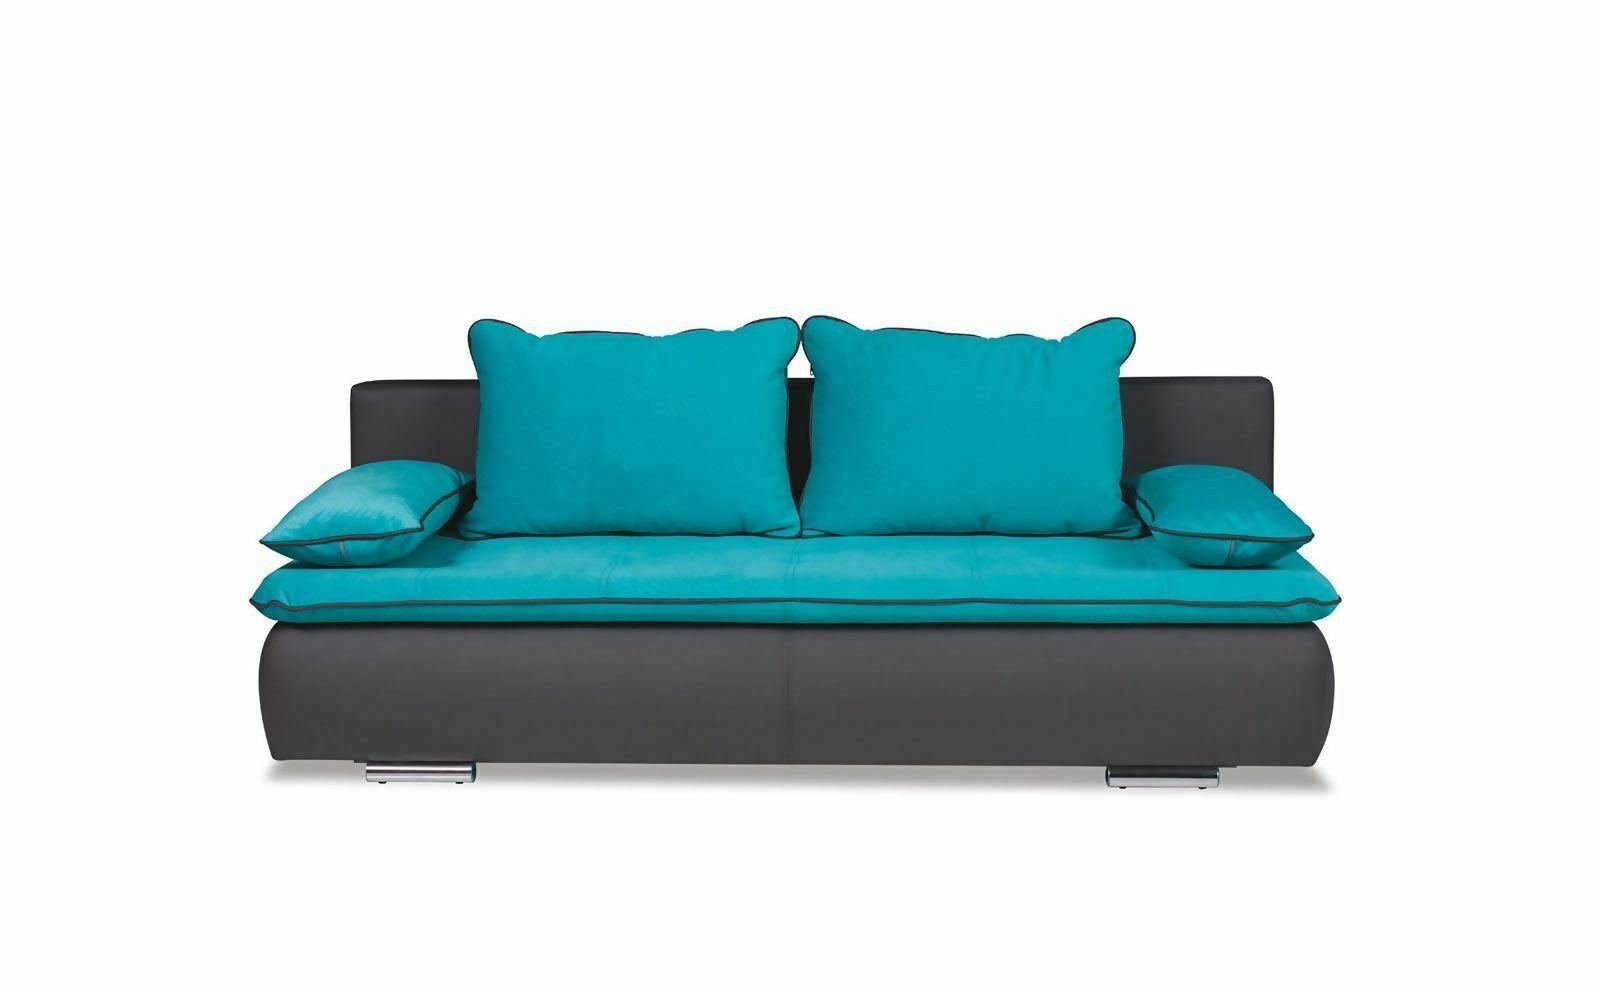 JVmoebel Sofa Designer Made Couch in Luxus Dreisitzer Türkis Europe 3-Sitzer, Moderner Stoff